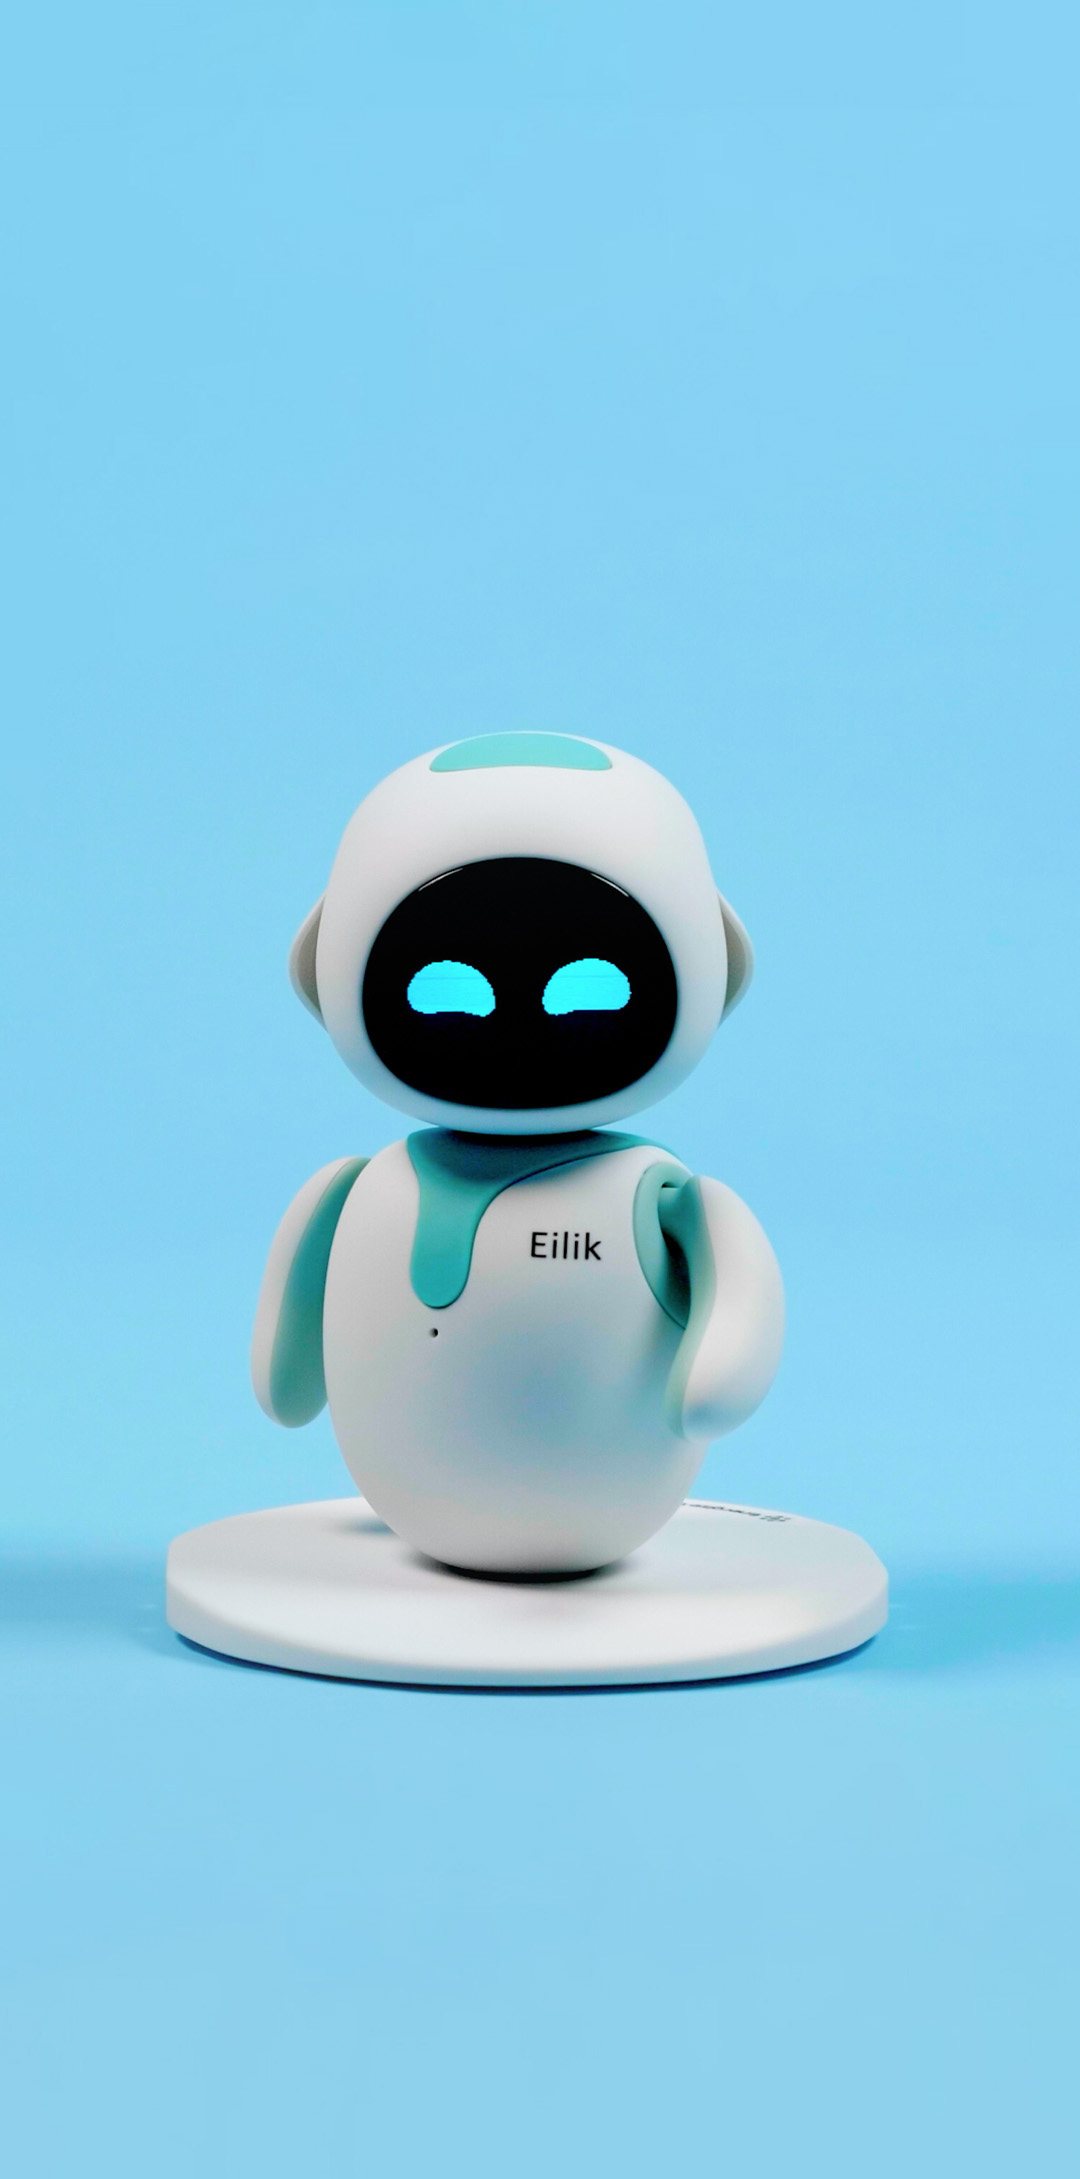 Energize Lab Eilik Little Companion Bot (Blue) - RobotShop